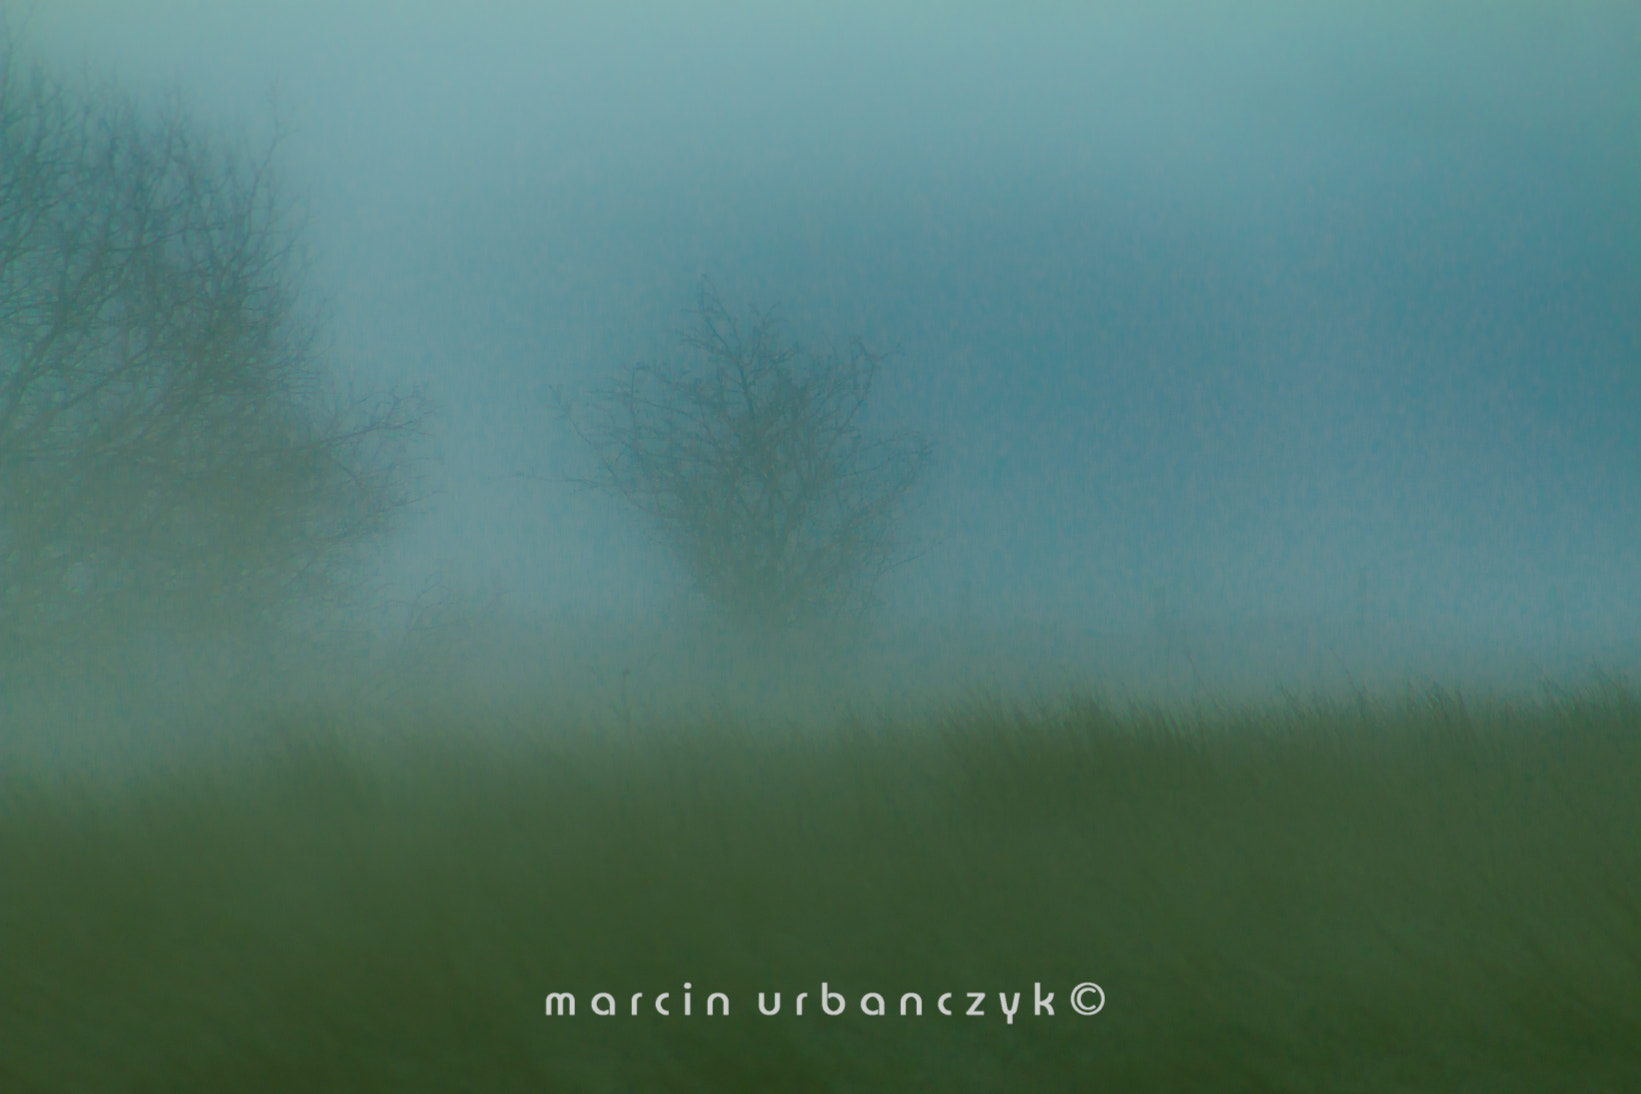 Canon EOS 70D sample photo. Misty photography